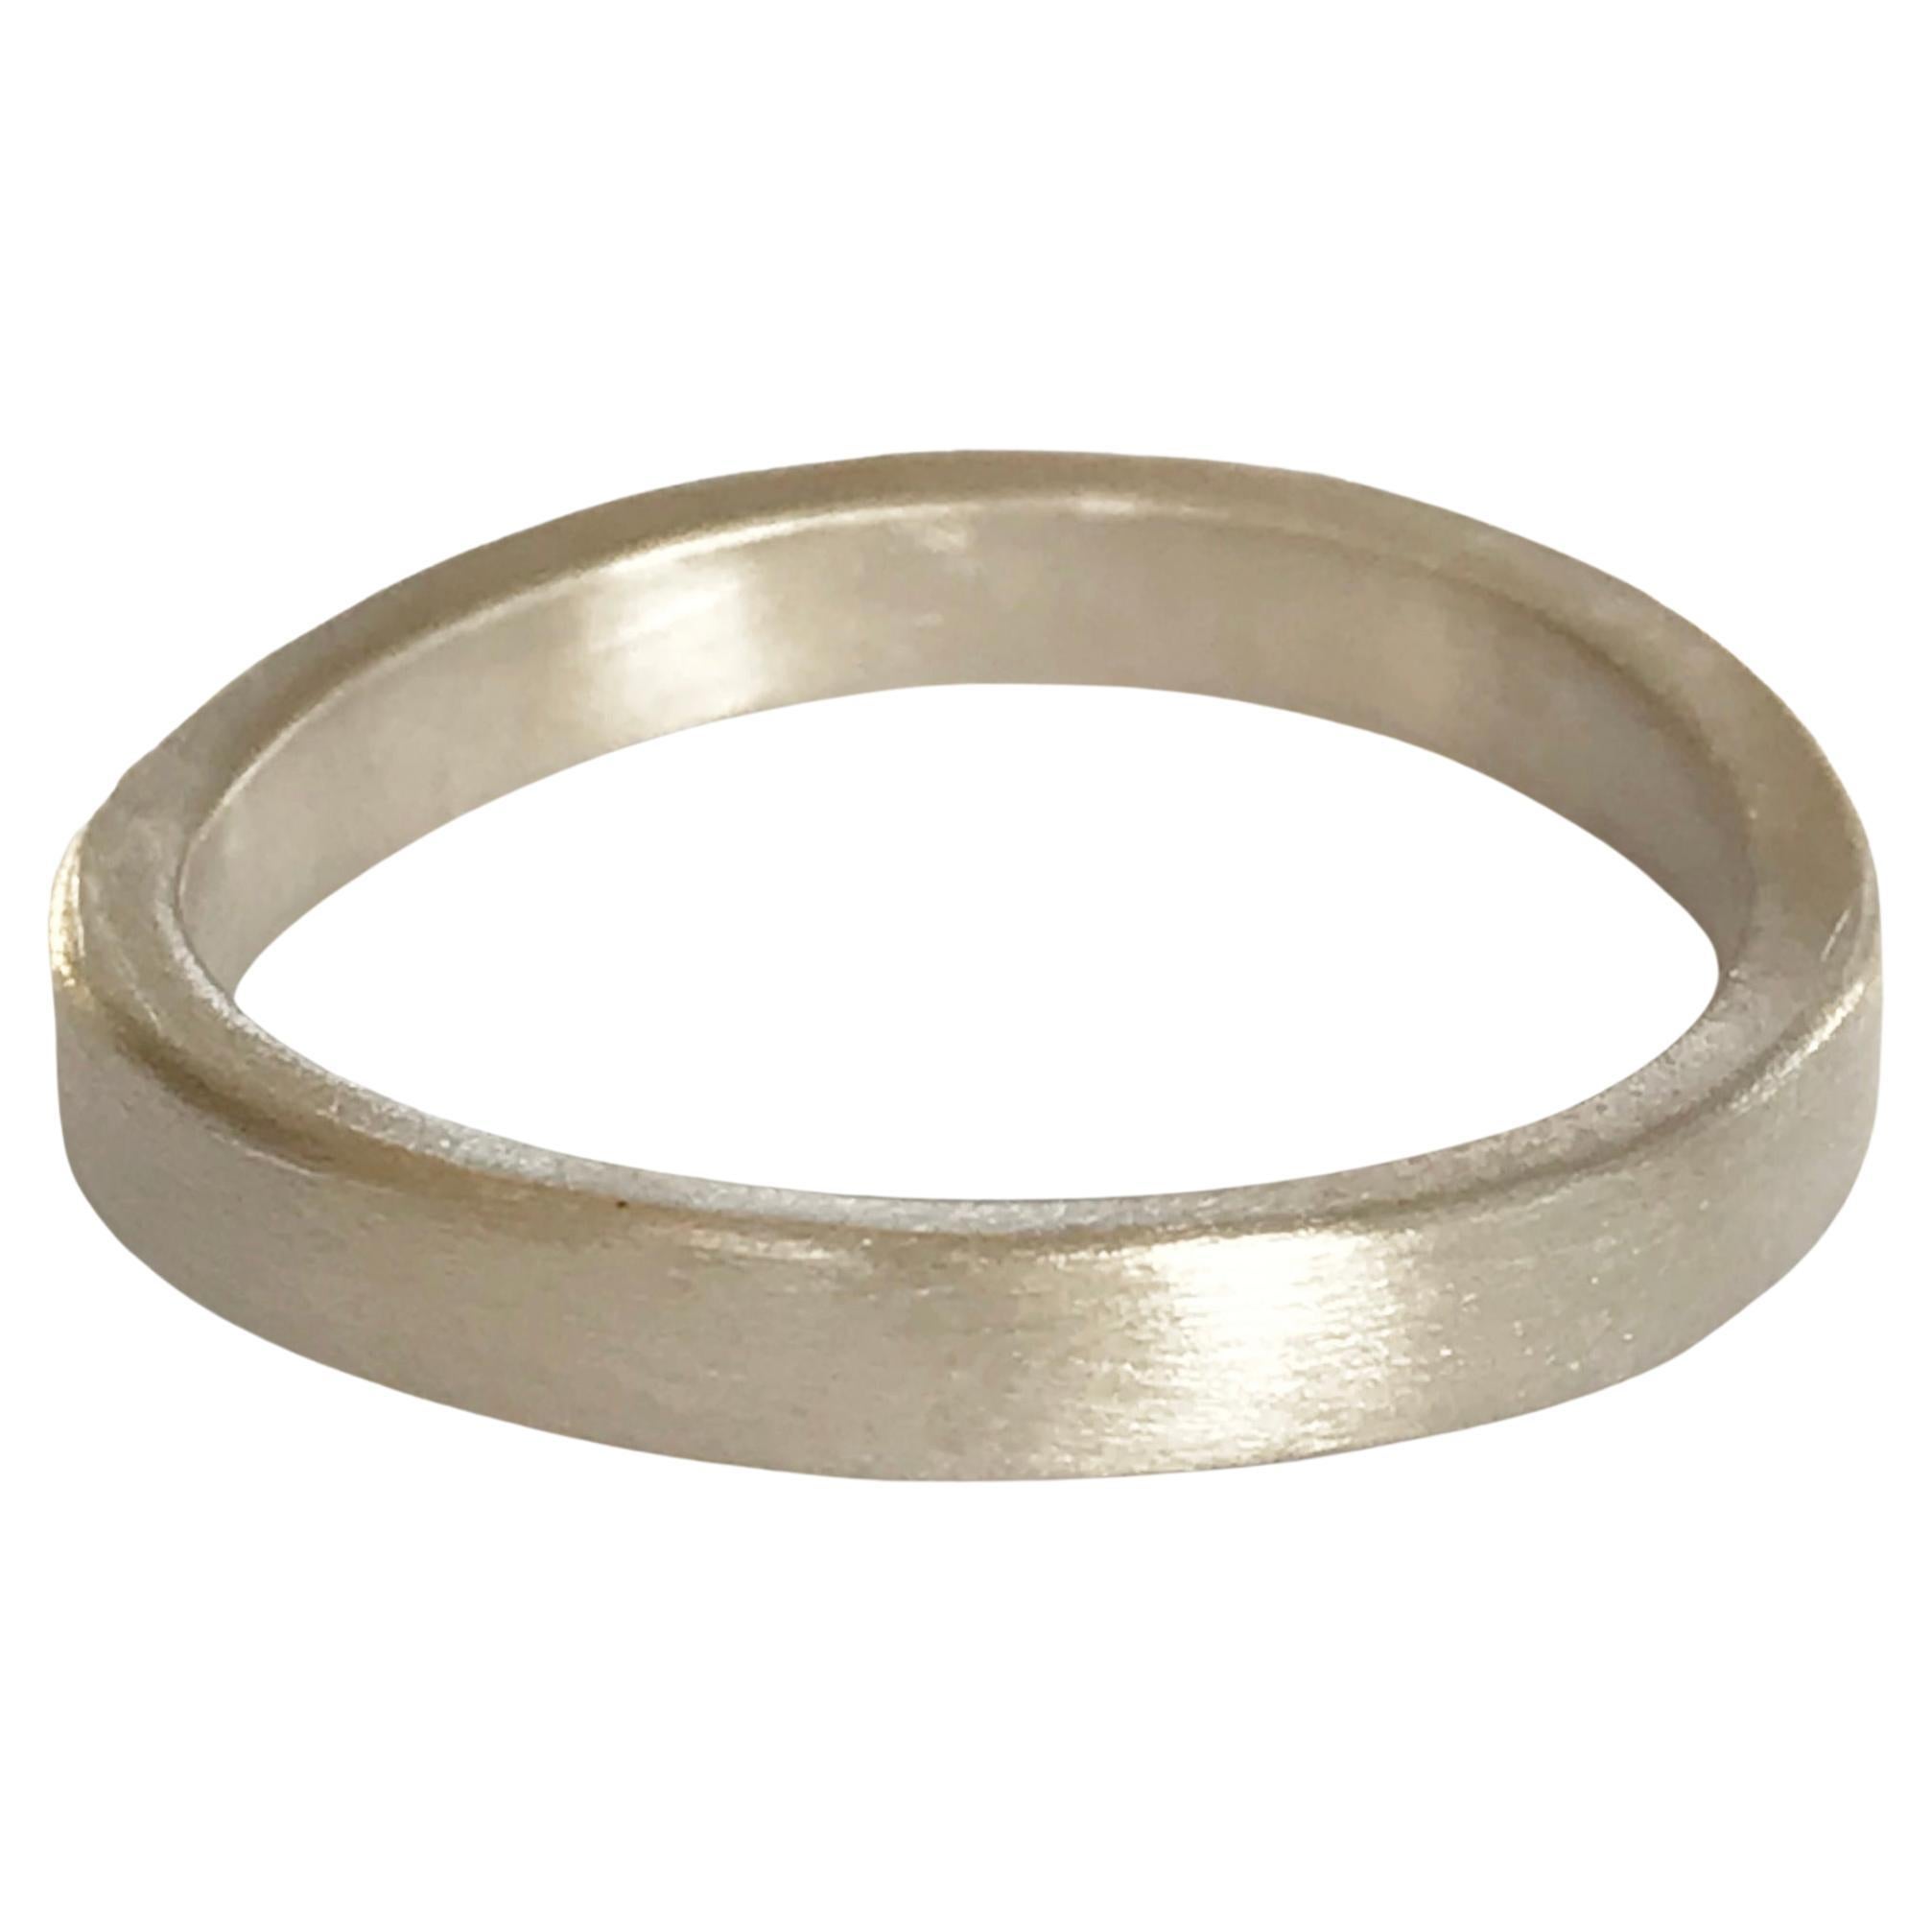 Dalben White Gold Band Ring